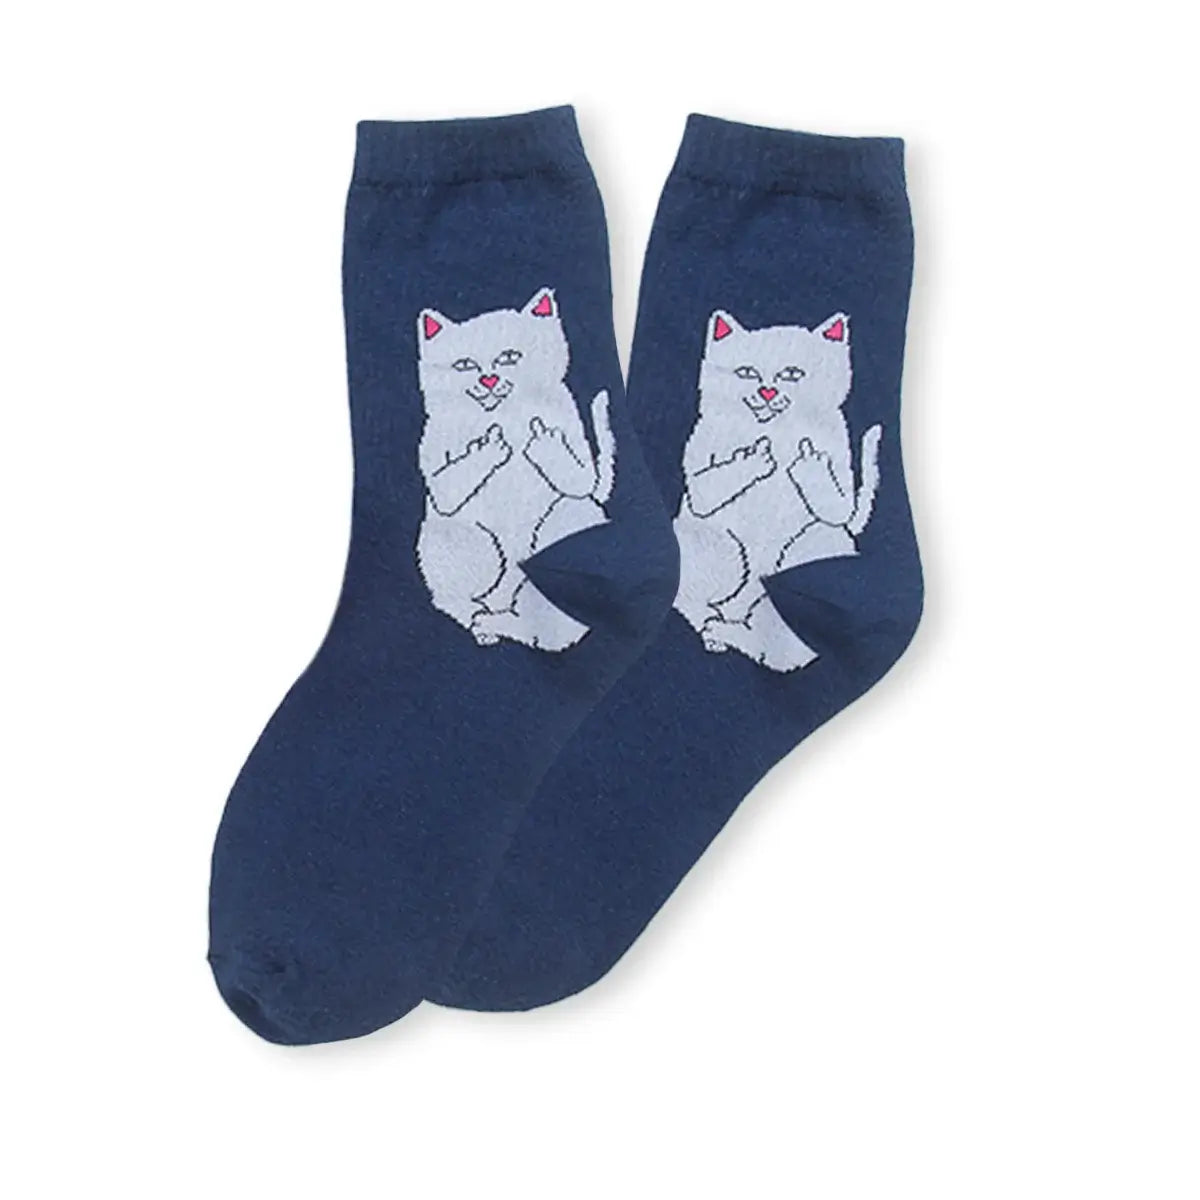 Chaussettes bleu adultes en coton avec un chat rebelle | Chaussettes douces et respirantes | Un excellent choix pour les adultes qui aiment les chats et le style rebelle |